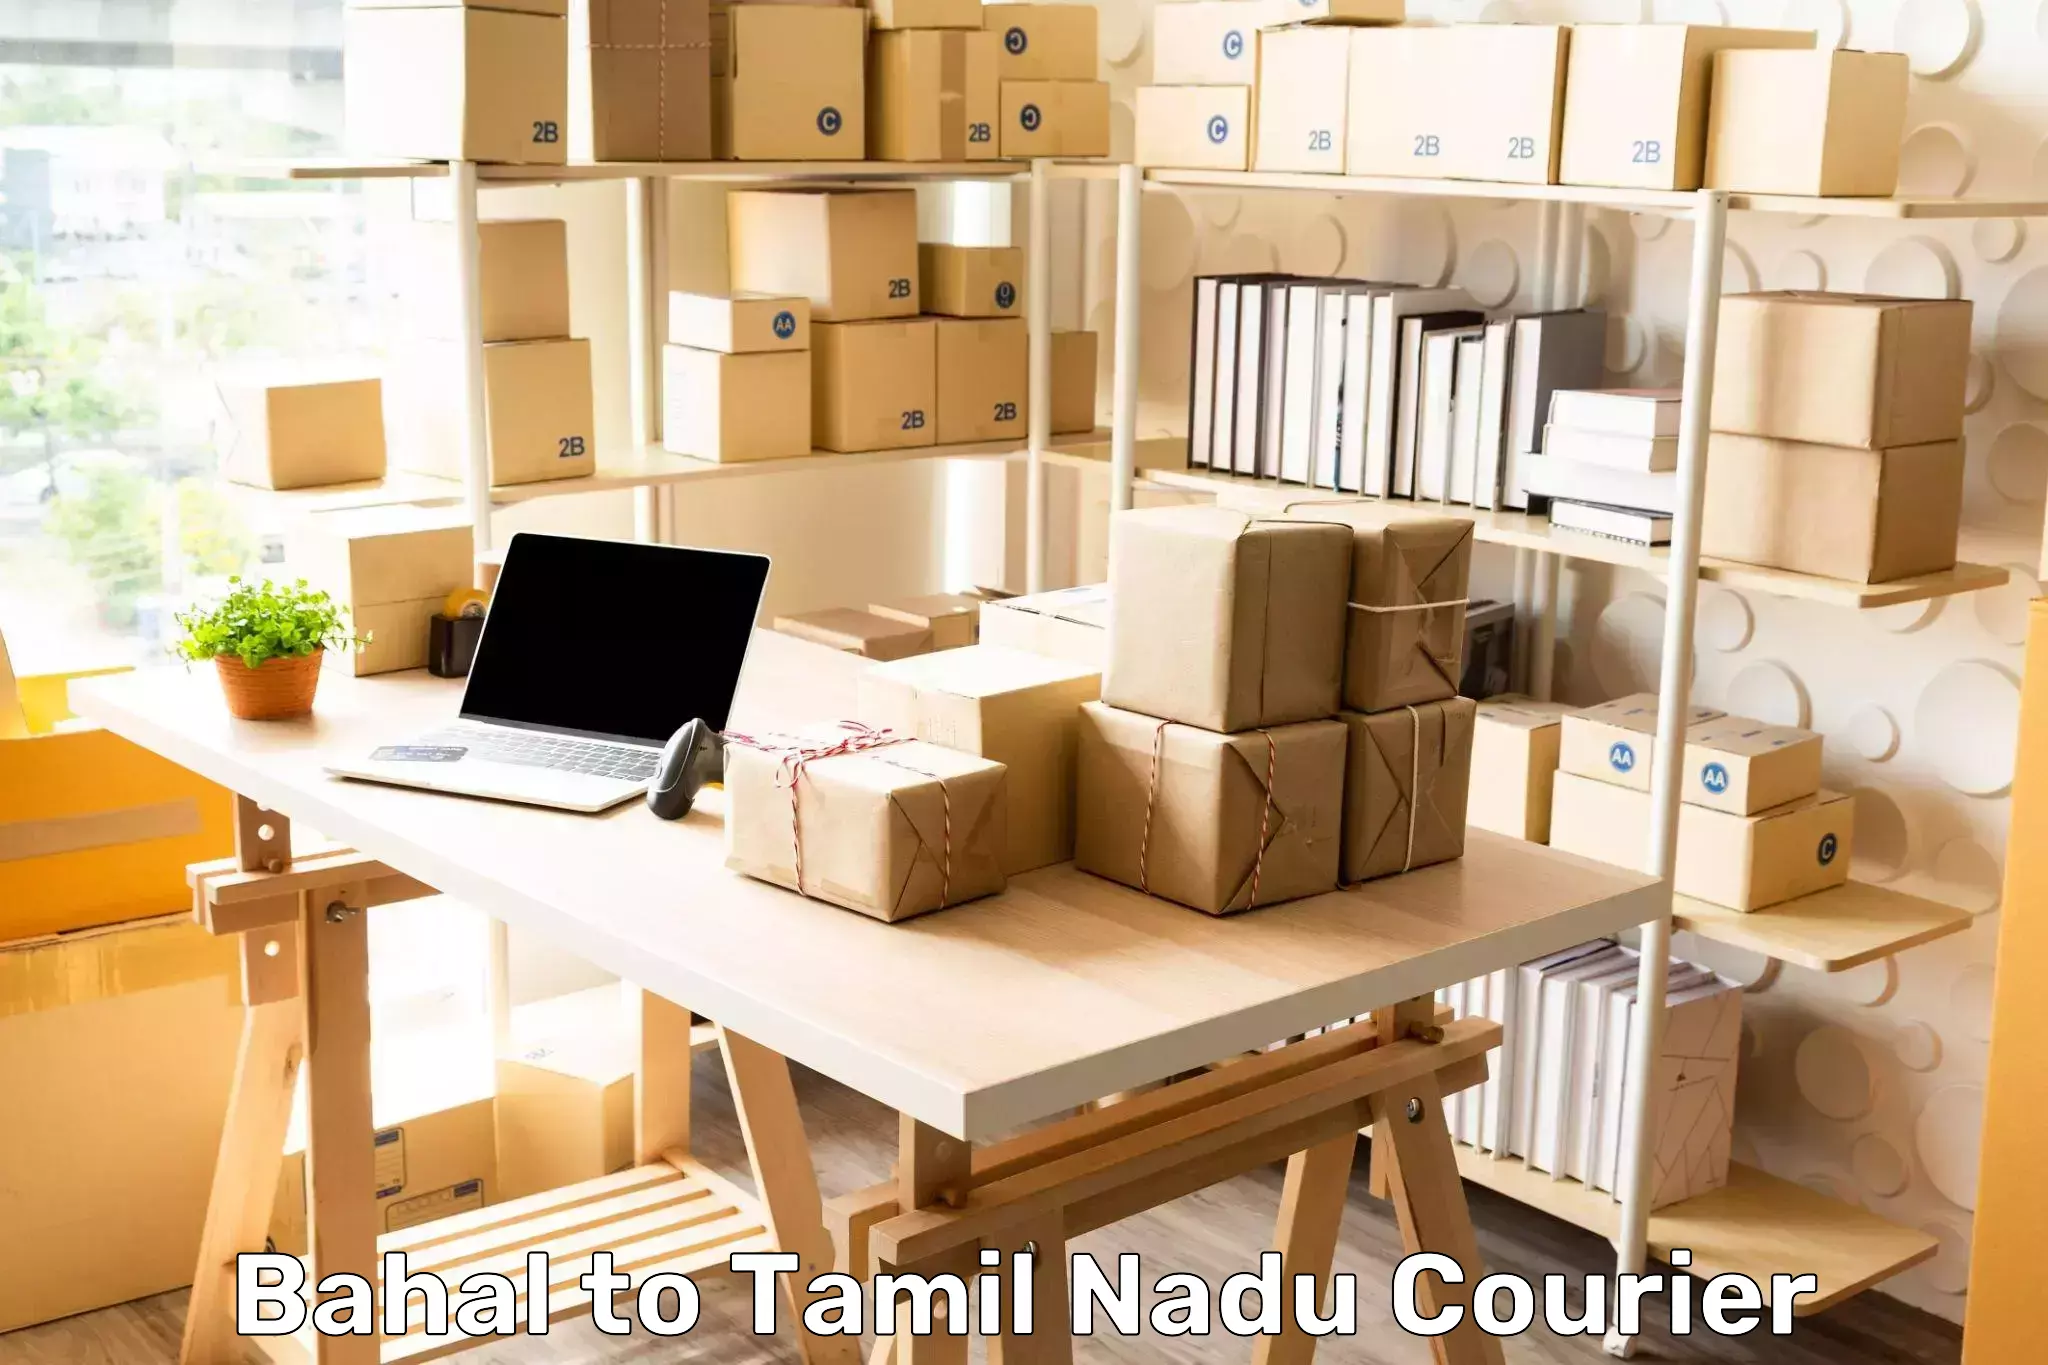 High-capacity shipping options Bahal to Chennai